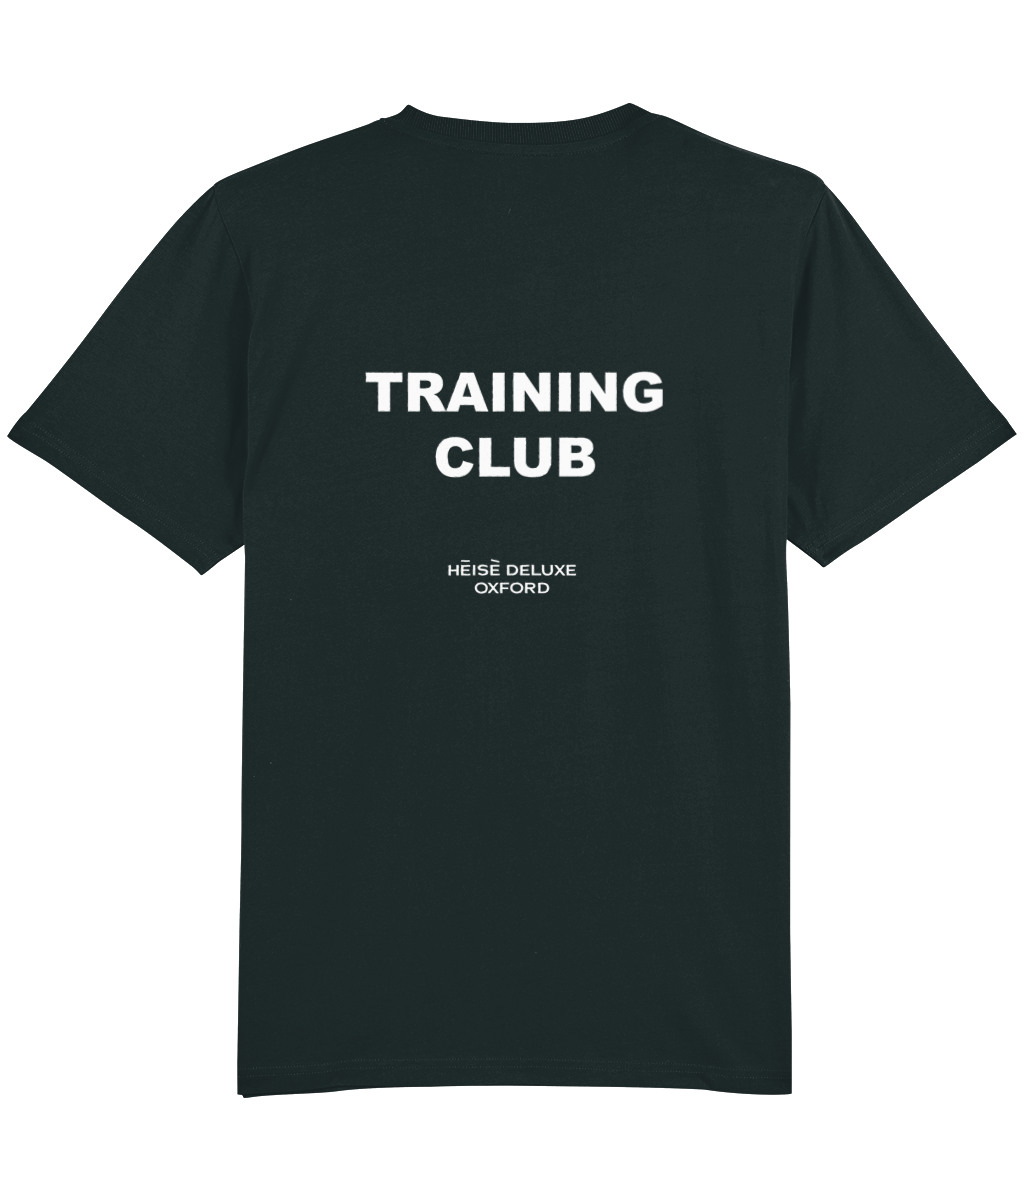 Training Club - T-shirt